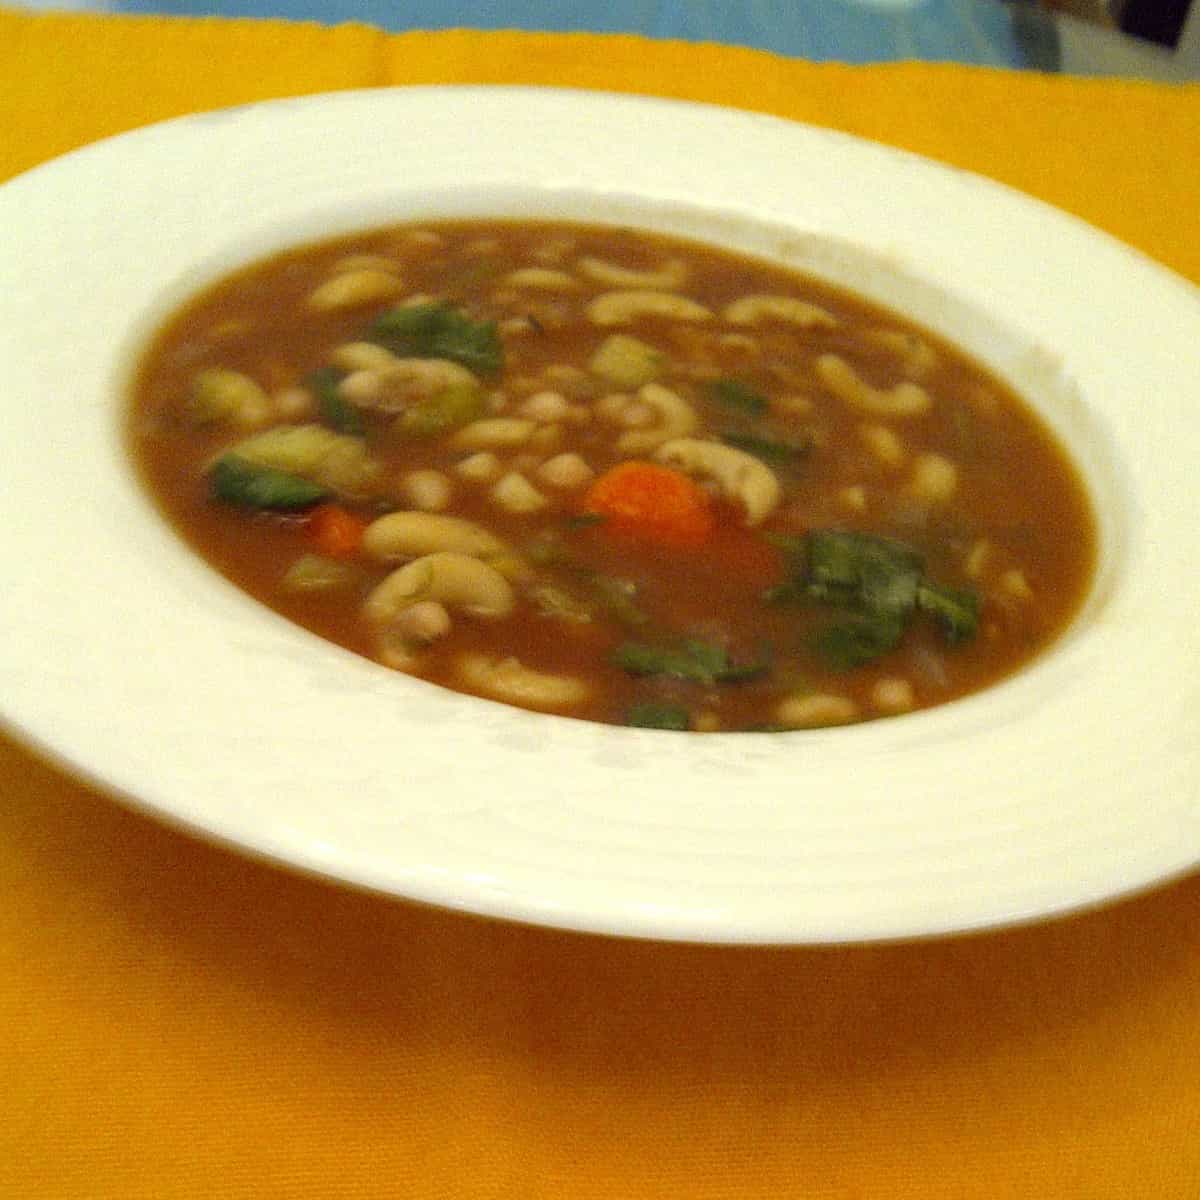 Hearty Vegan Navy Bean Soup